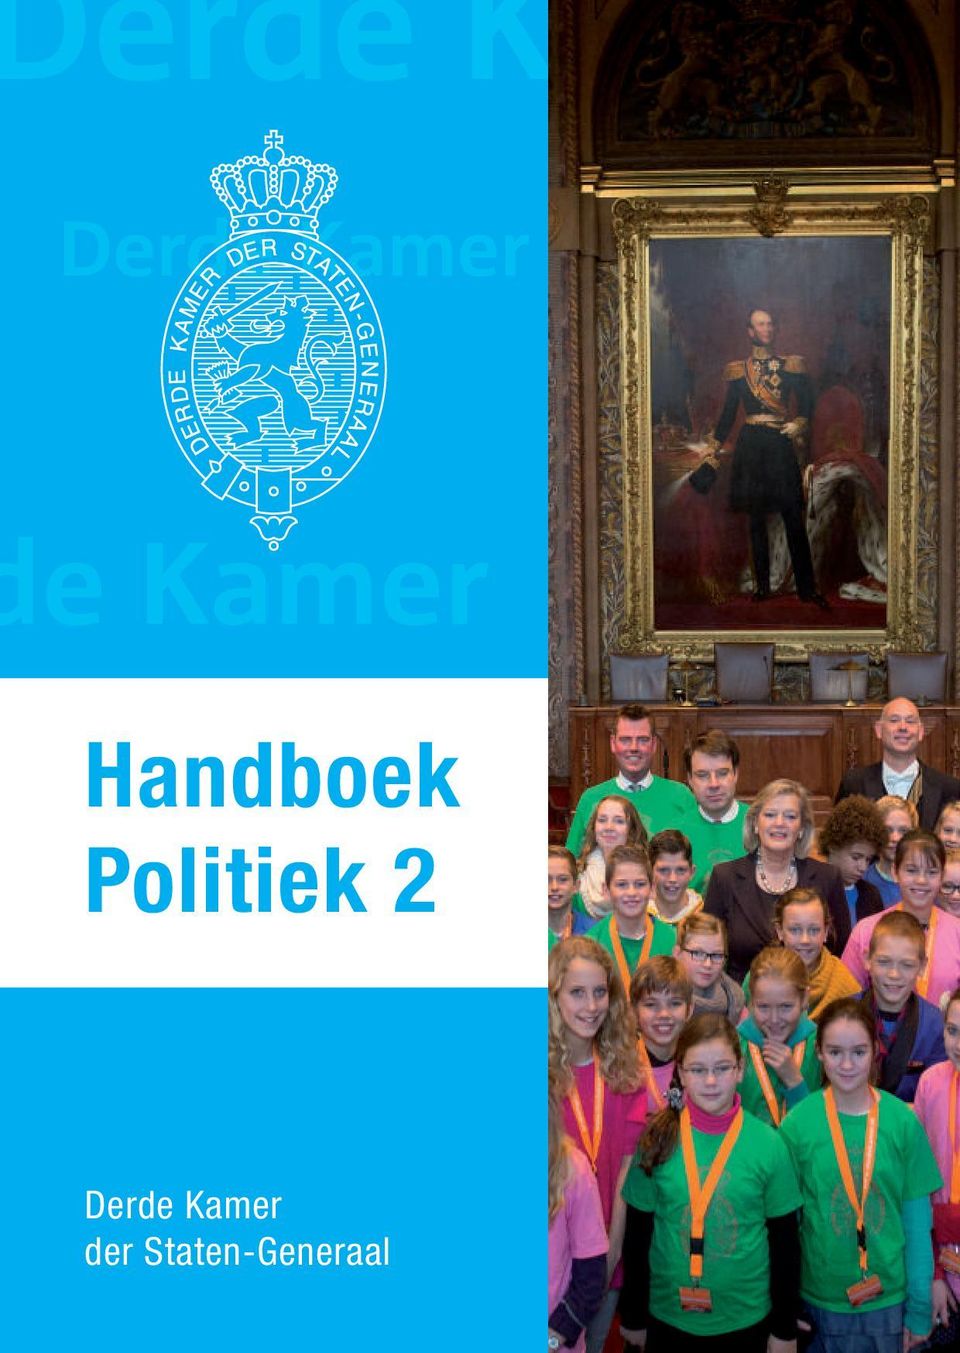 Handboek Politiek 2